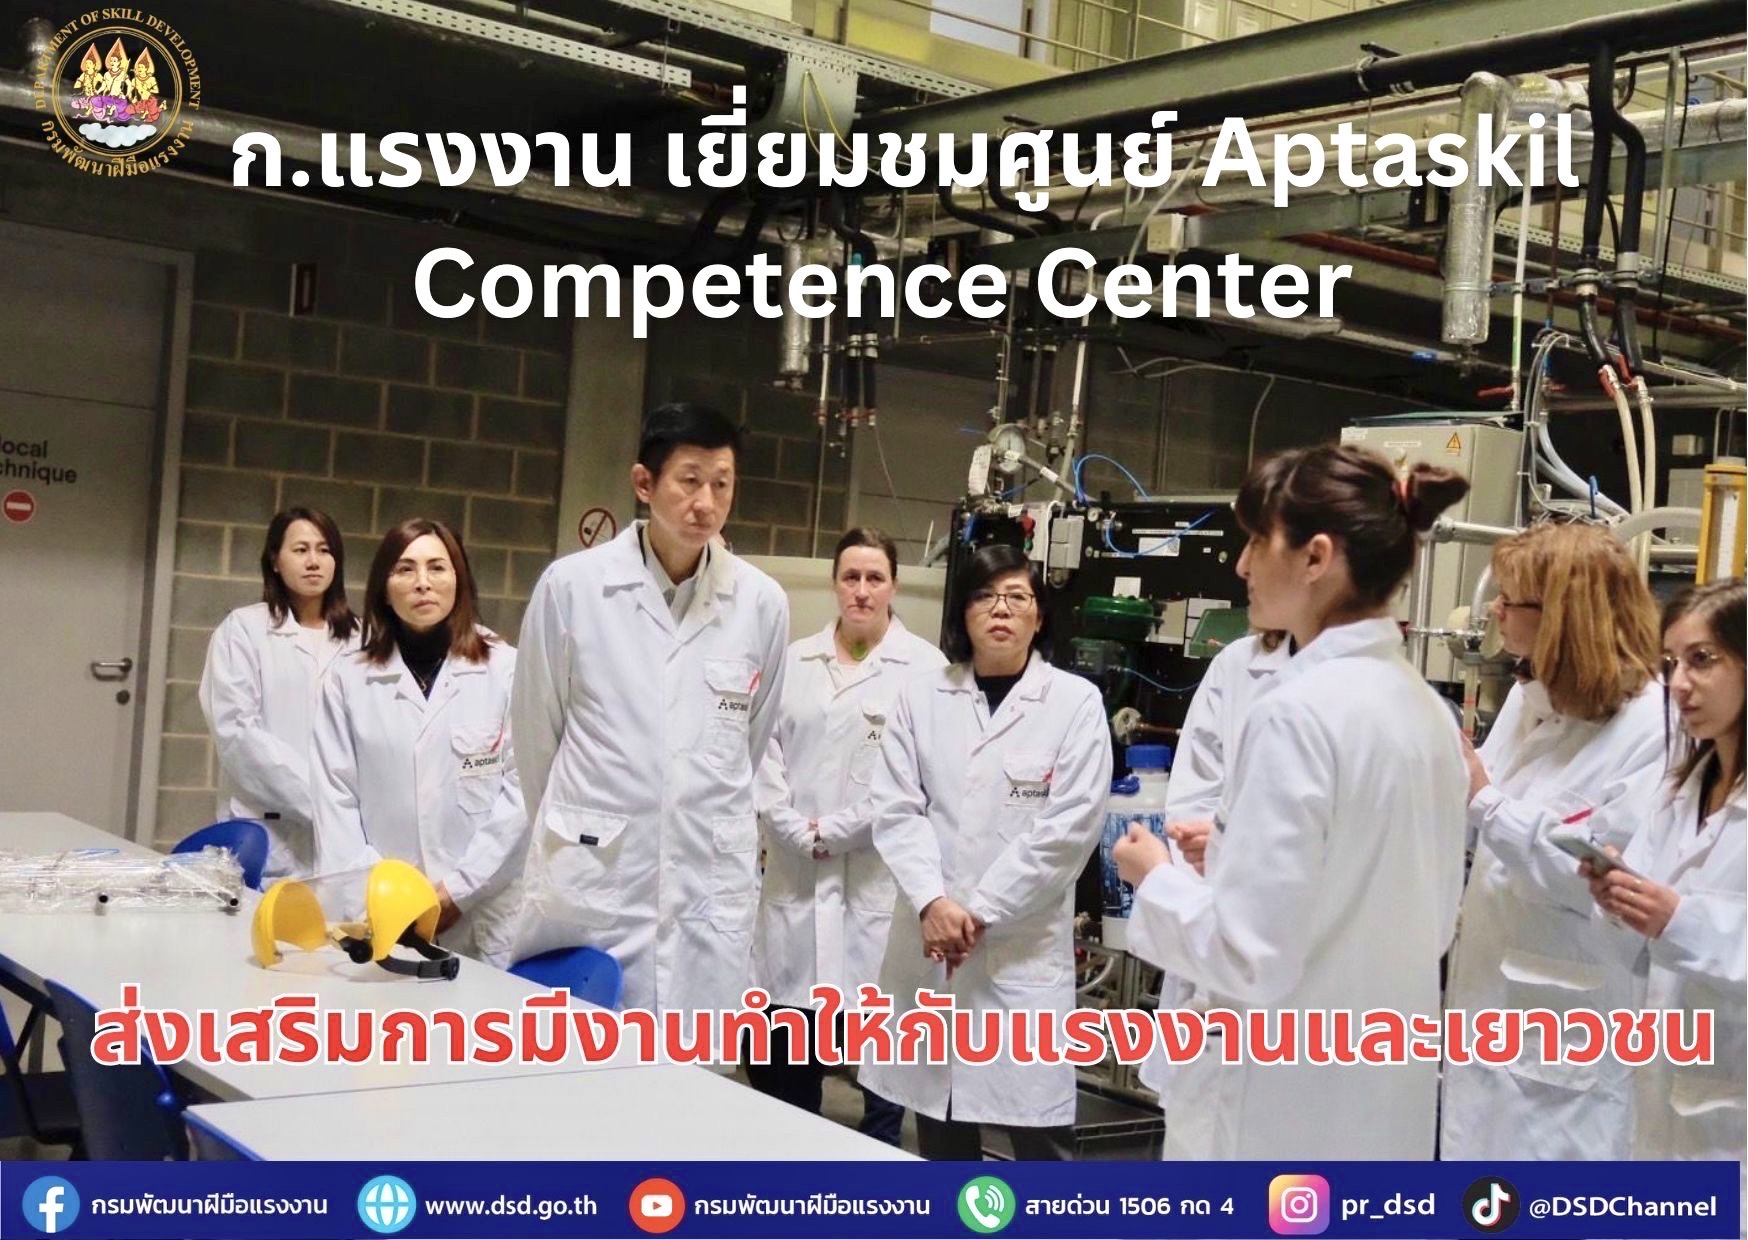 ก.แรงงาน เยี่ยมชมศูนย์ Aptaskil Competence Center ส่งเสริมการมีงานทำให้กับแรงงานและเยาวชน